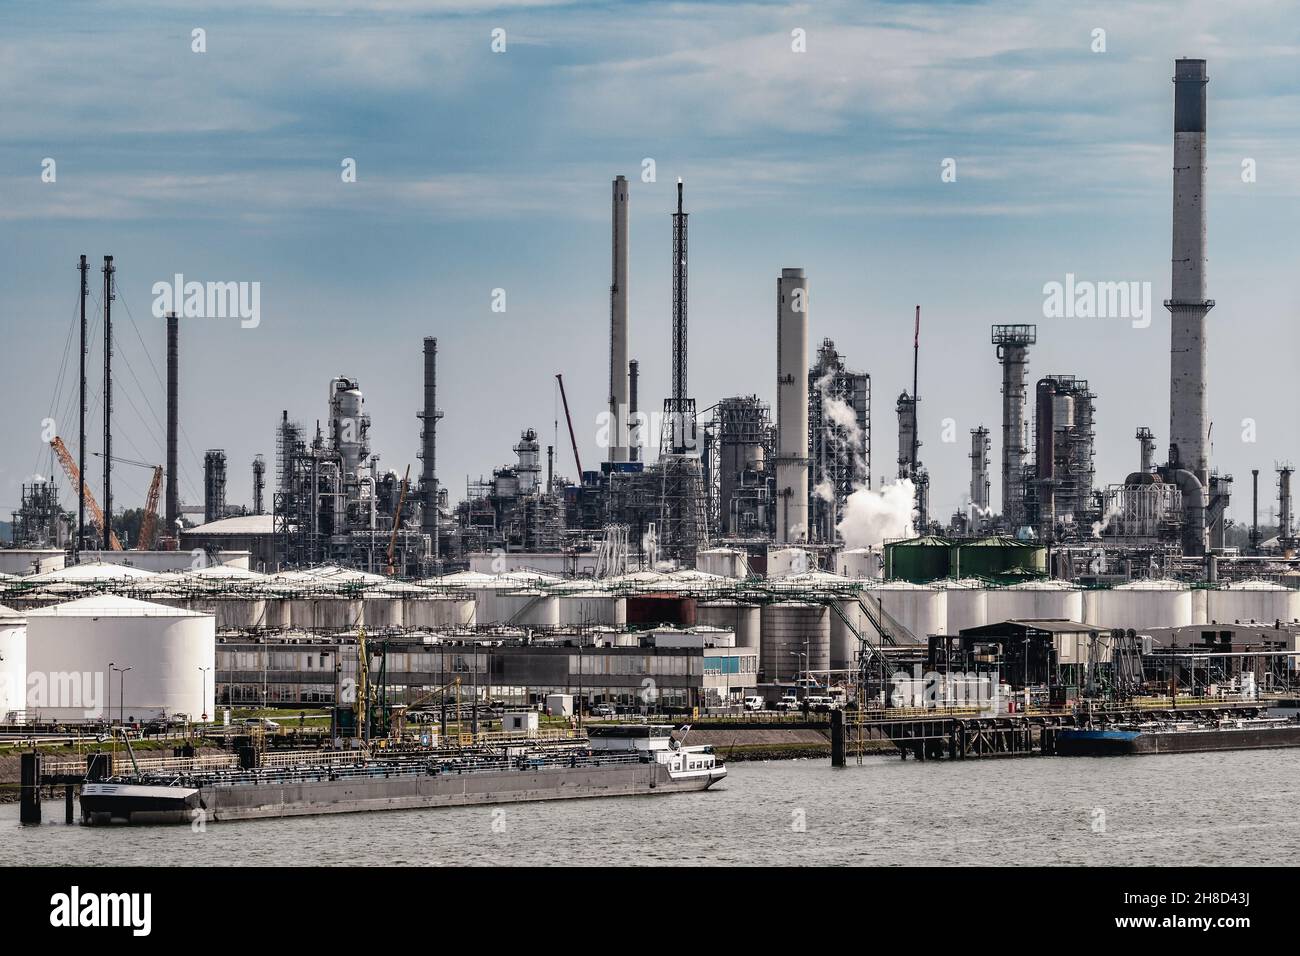 Refinería de petróleo, fábrica de plantas petroquímicas industriales y barcazas en un puerto de embarque industrial Foto de stock